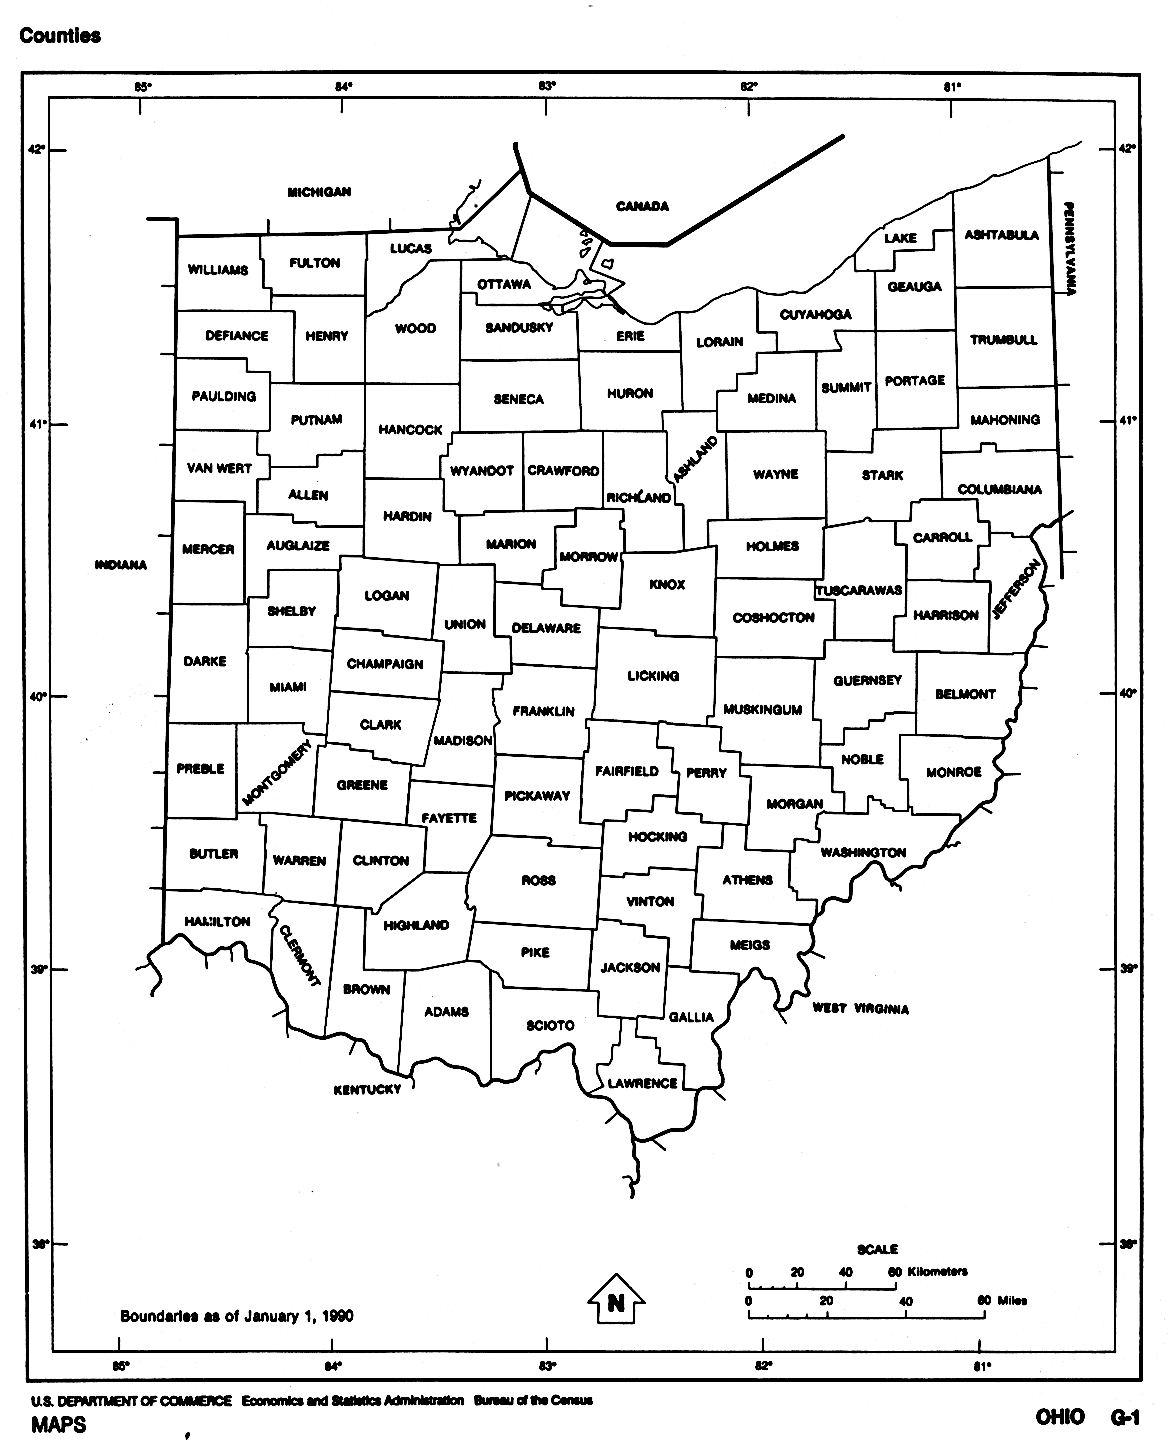  Maps of Ohio, Ohio (outline map) U.S. Bureau of the Census 1990 (71K) 